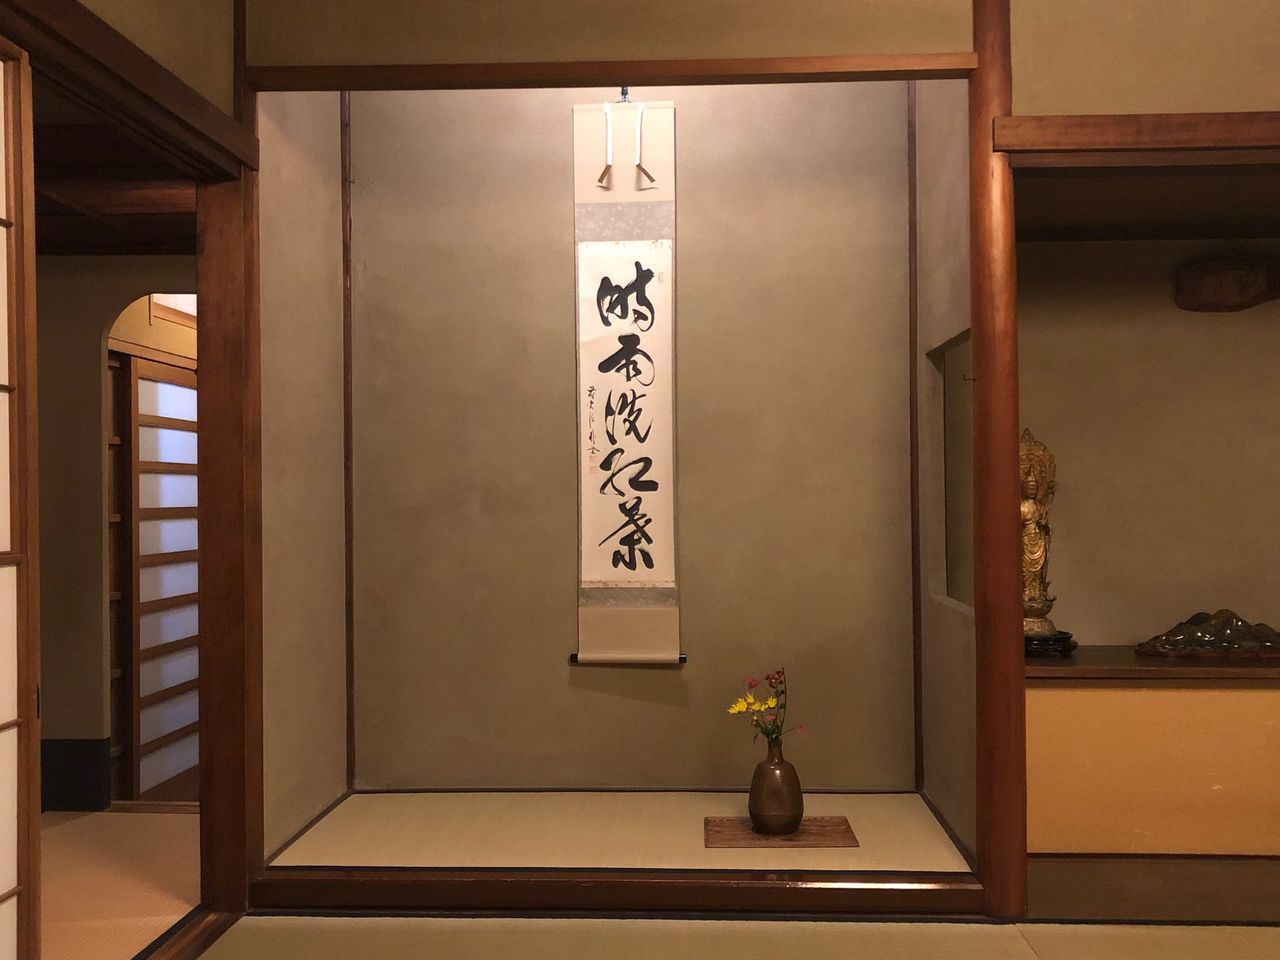 Цветы для чайной церемонии тябана и свиток какэдзику служат украшением ниши токонома